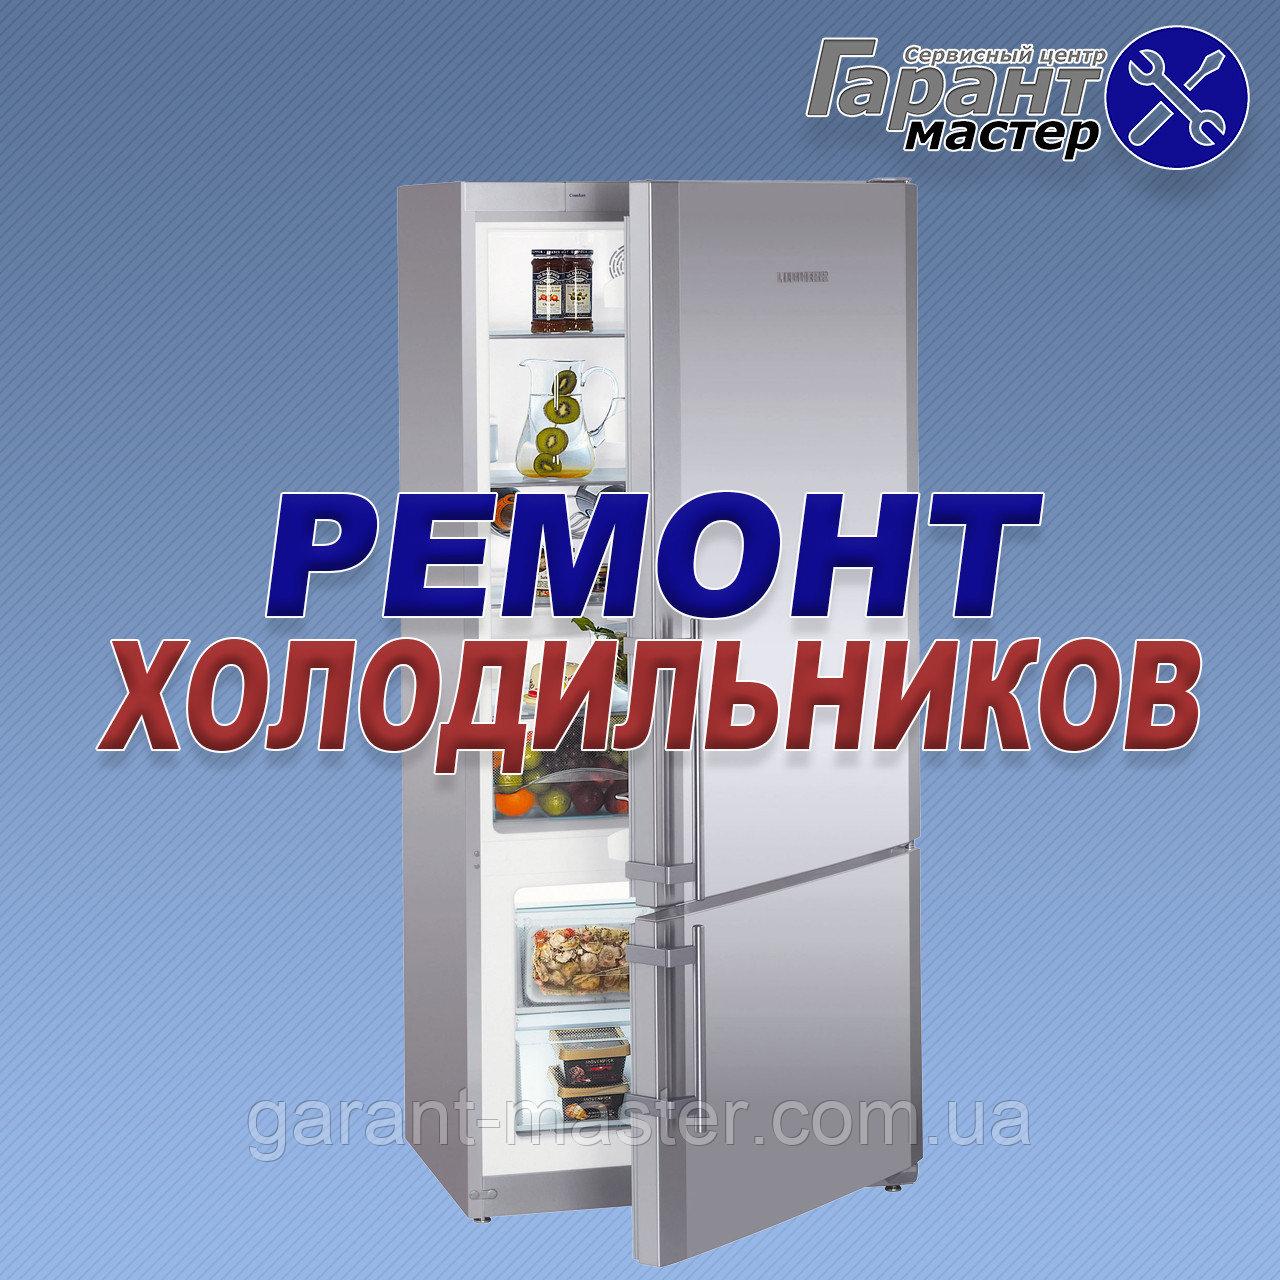 Ремонт холодильників ARISTON у Львові